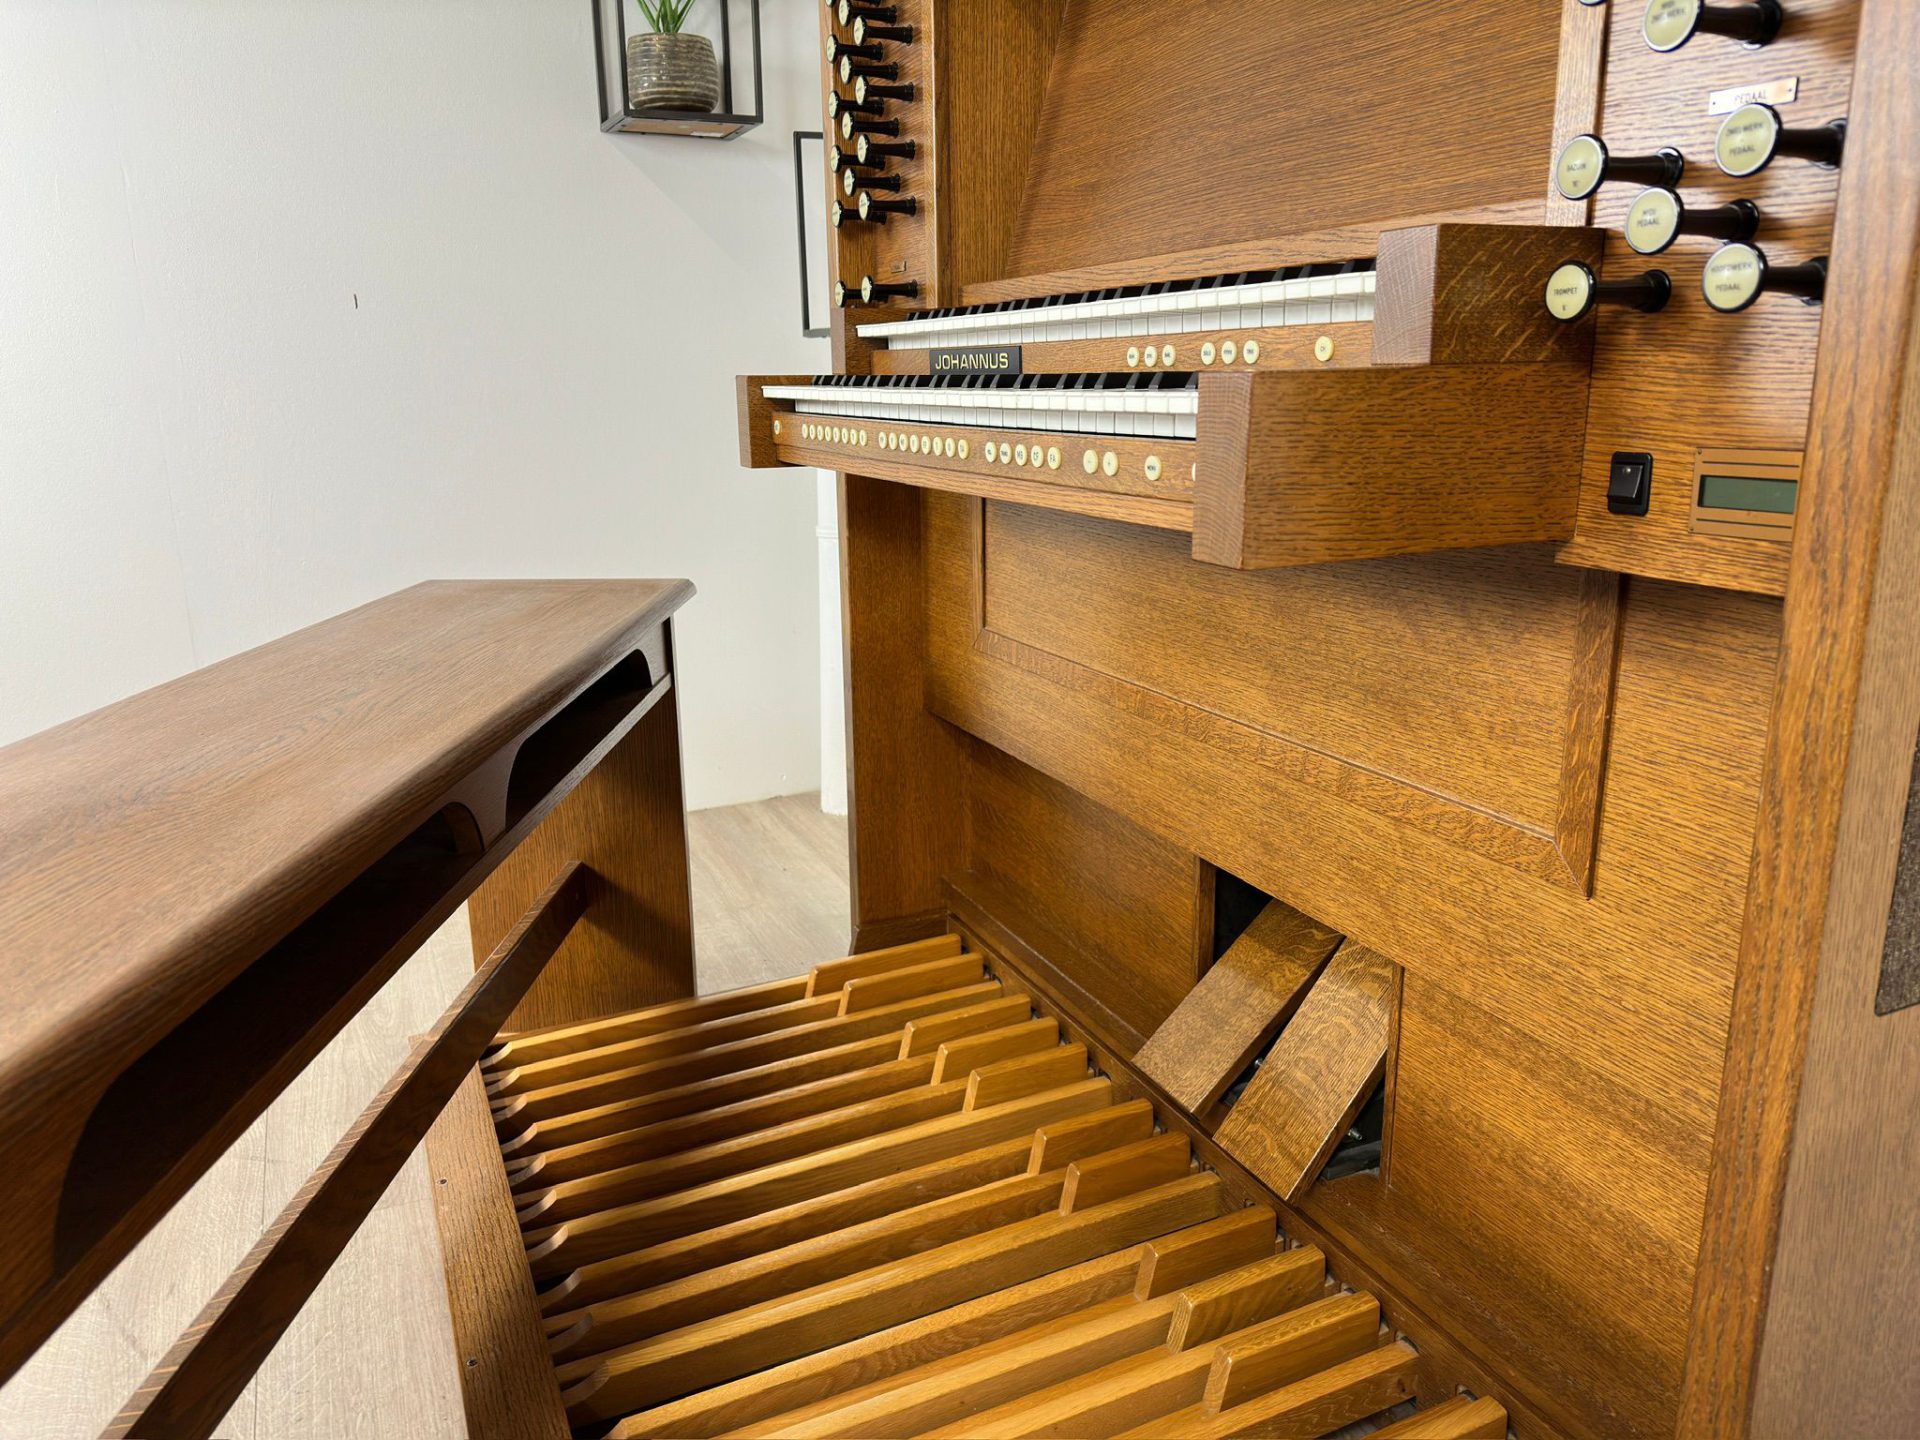 Johannus Kabinet Andante Orgels